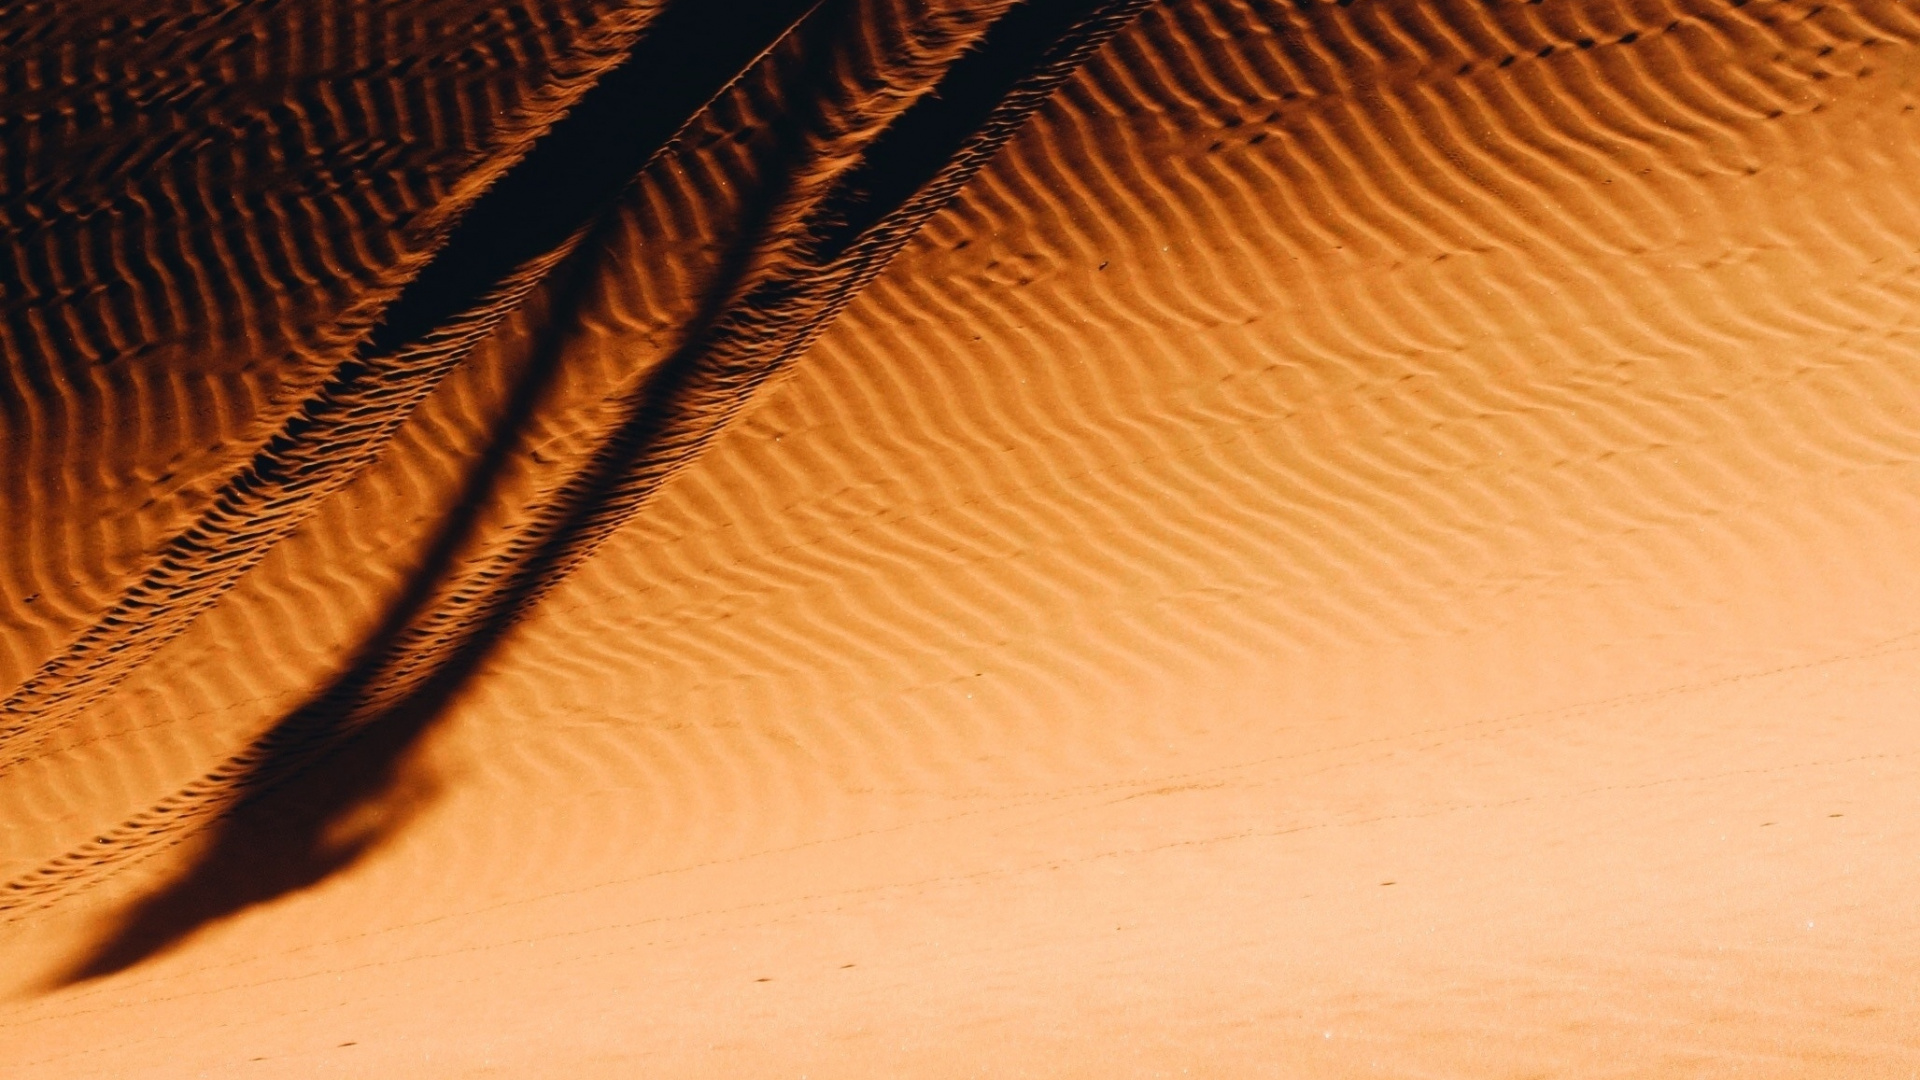 Desert, Sunset, Sand, Morocco, Wallpaper - Morocco - HD Wallpaper 